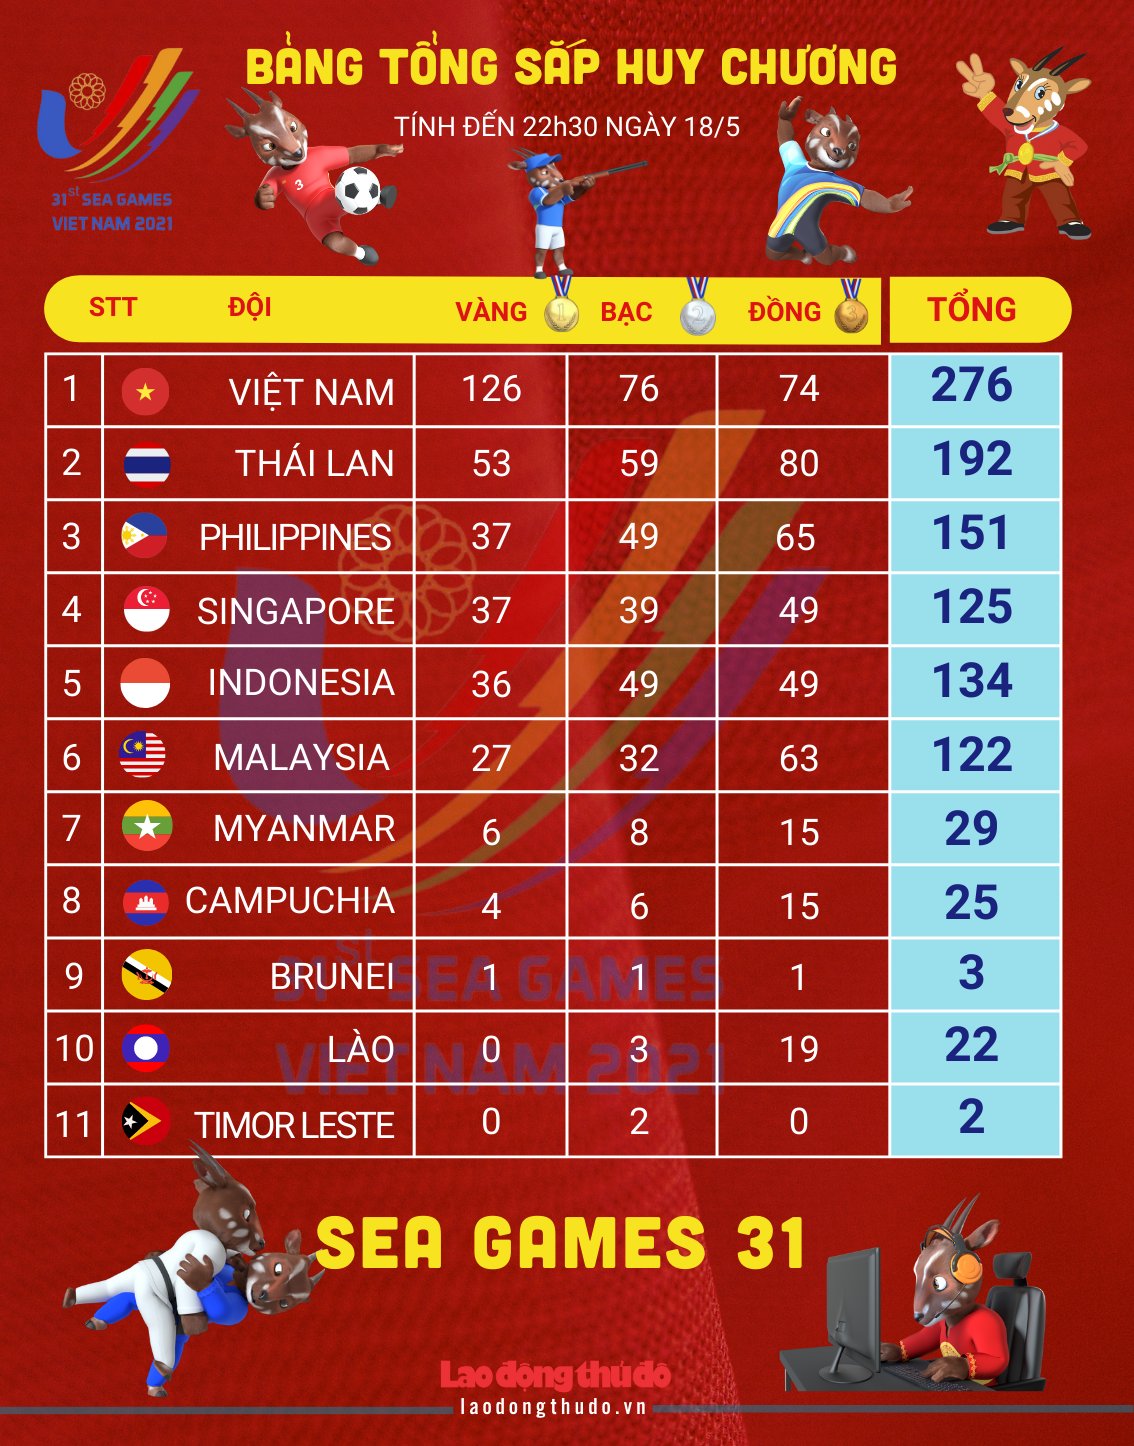 [Infographics] Bảng tổng sắp huy chương SEA Games 31 ngày 18/5: “Cơn mưa” HCV giúp Việt Nam bỏ xa các đoàn xếp sau